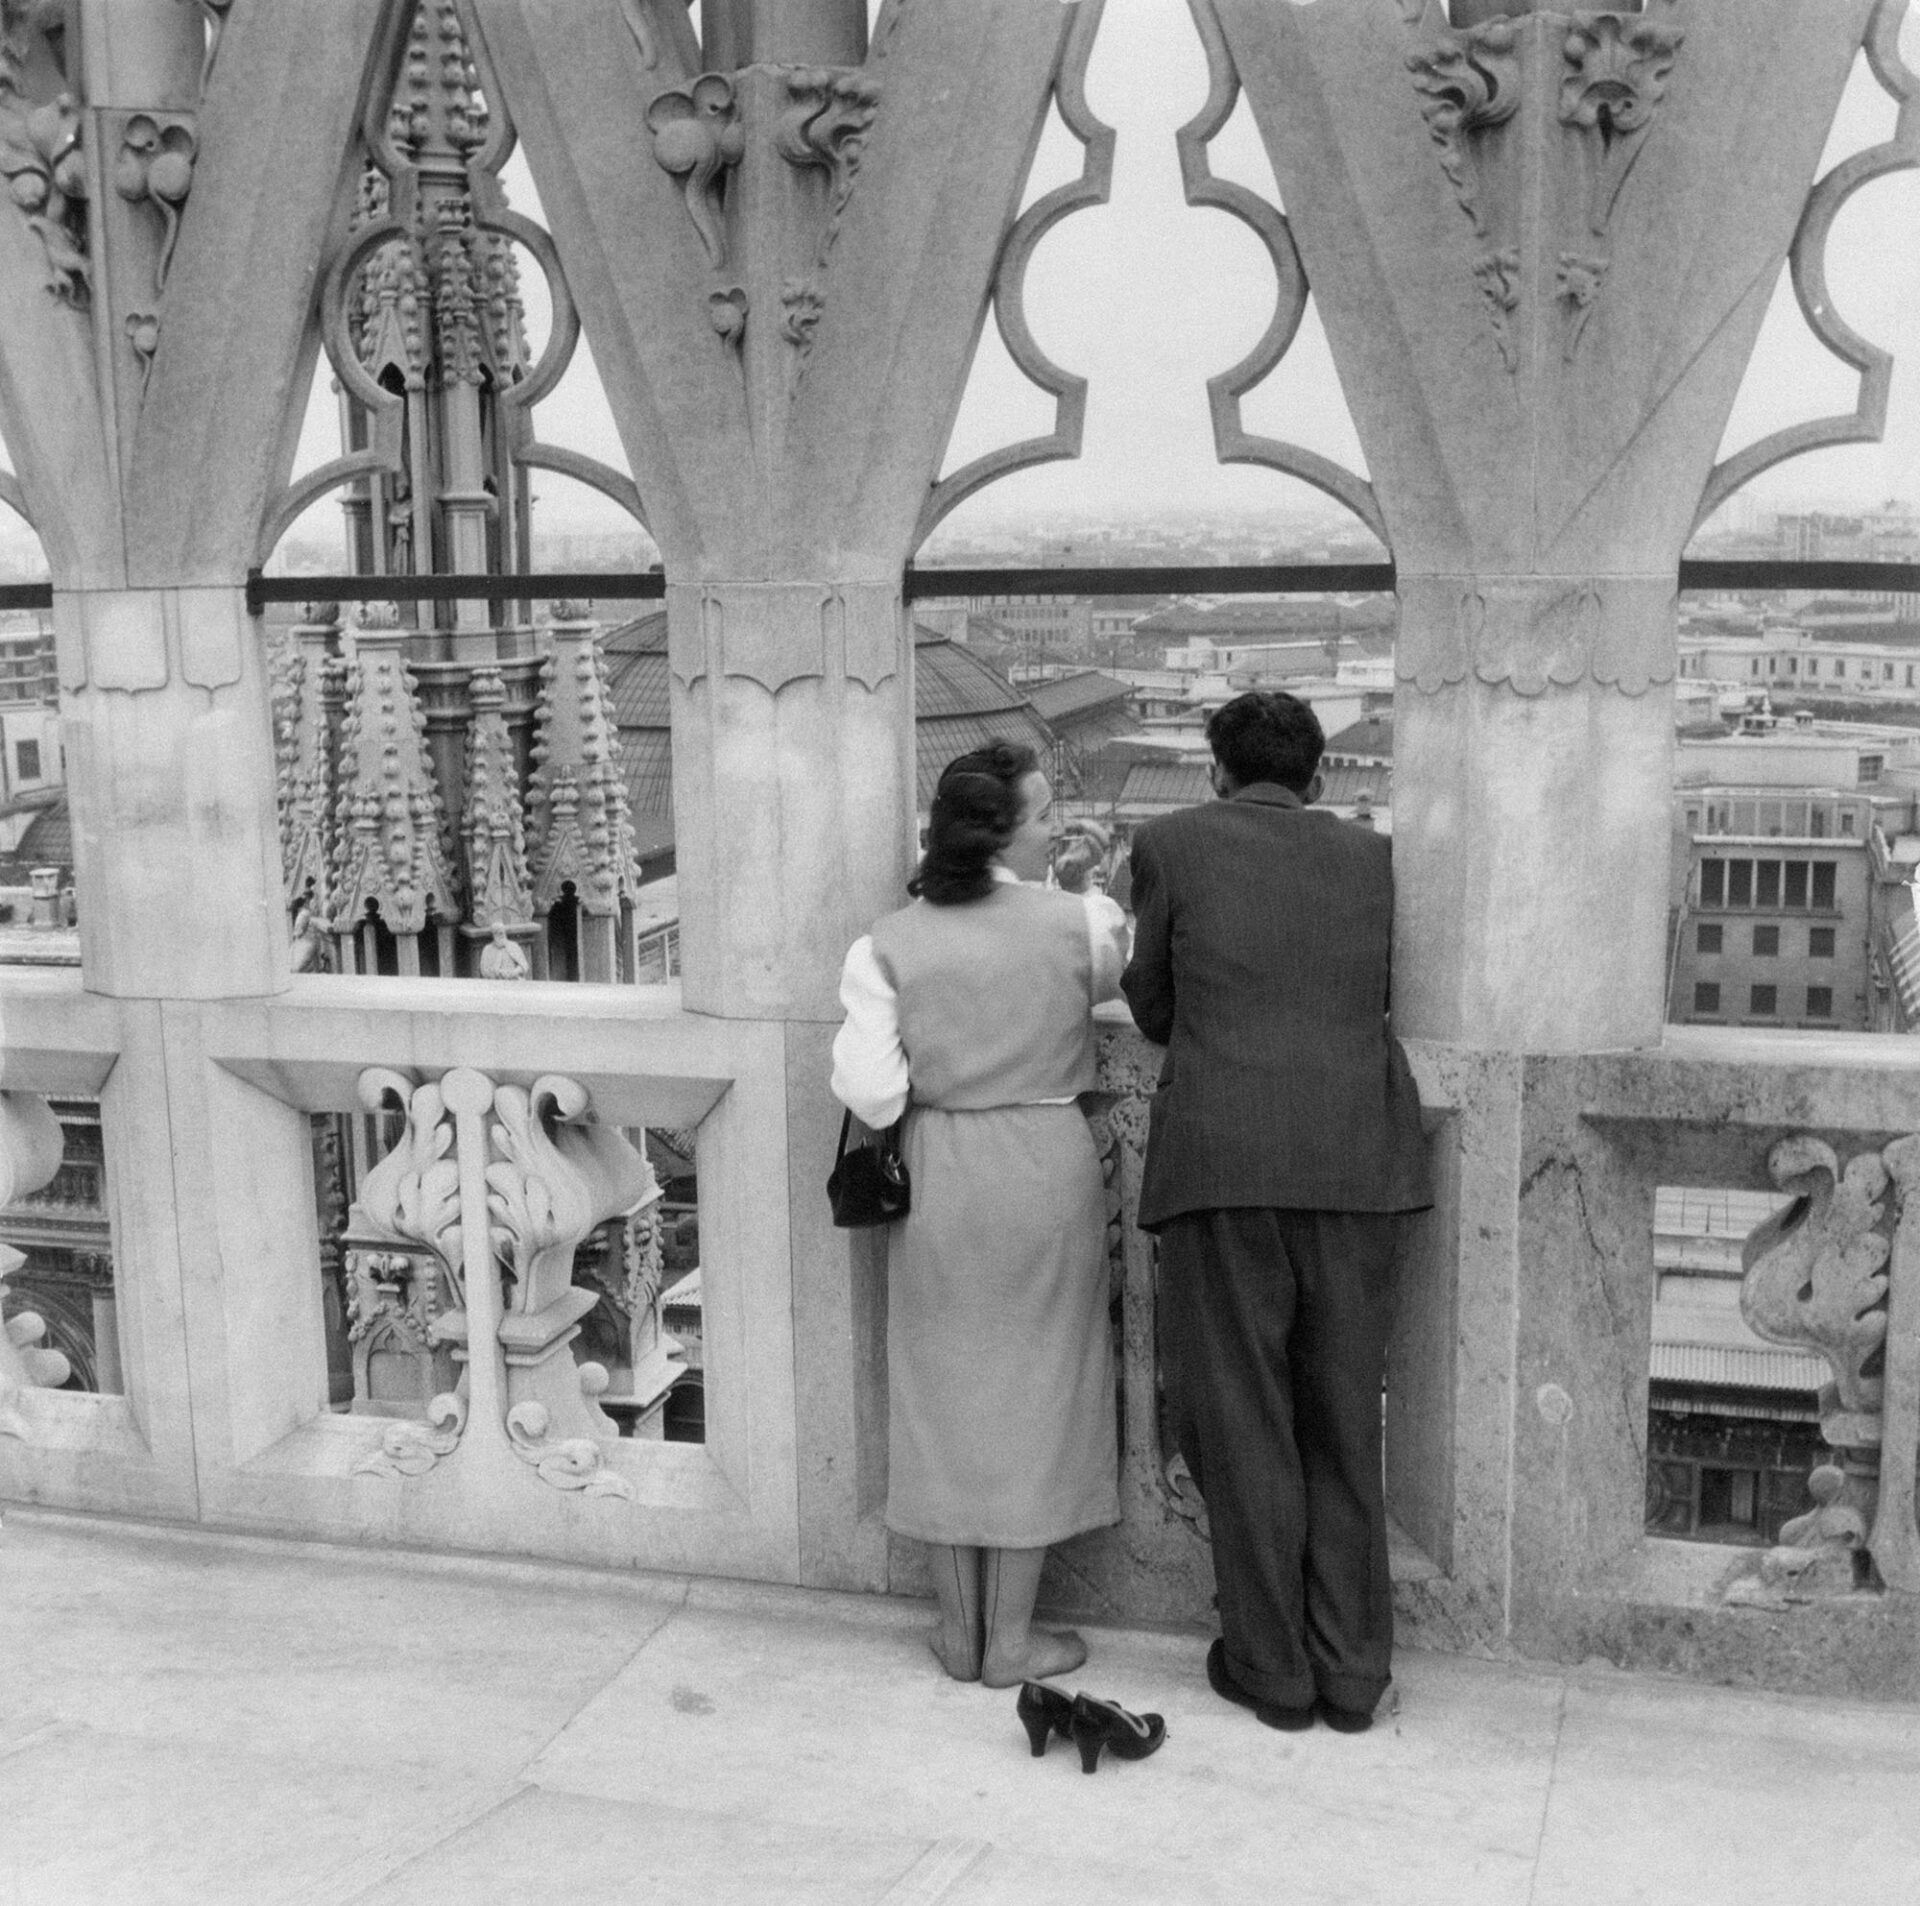 Coppia in viaggio di nozze sulle terrazze del Duomo (“Le scarpe strette”), Milano, 1954